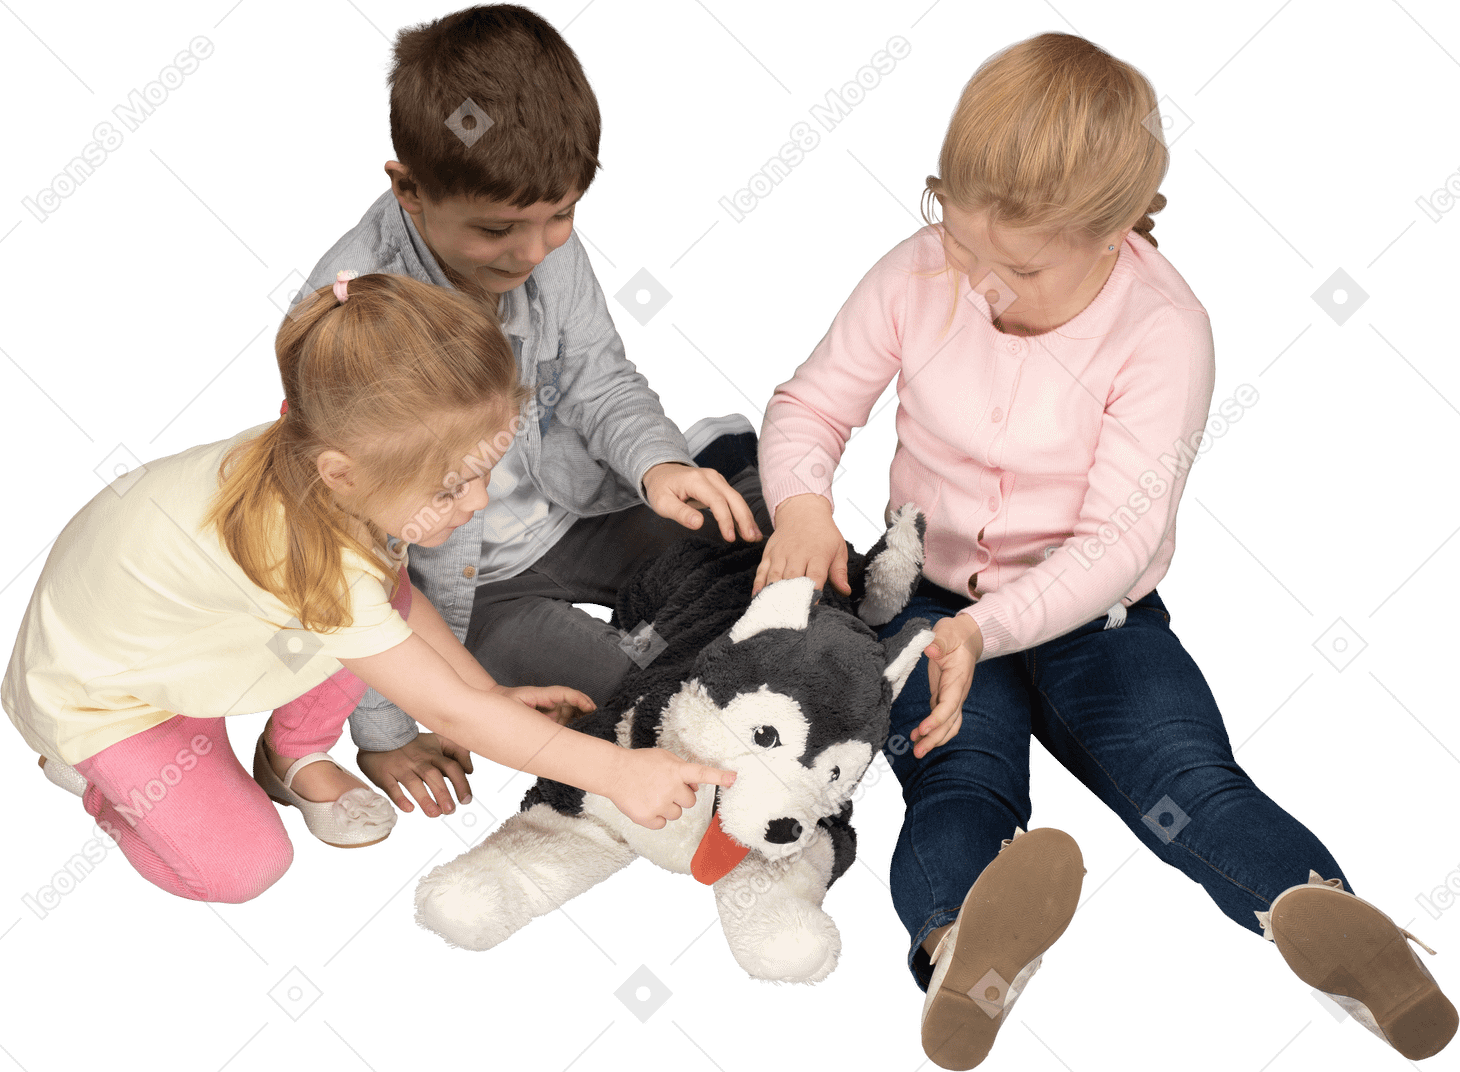 Drei süße kinder spielen mit husky-spielzeug